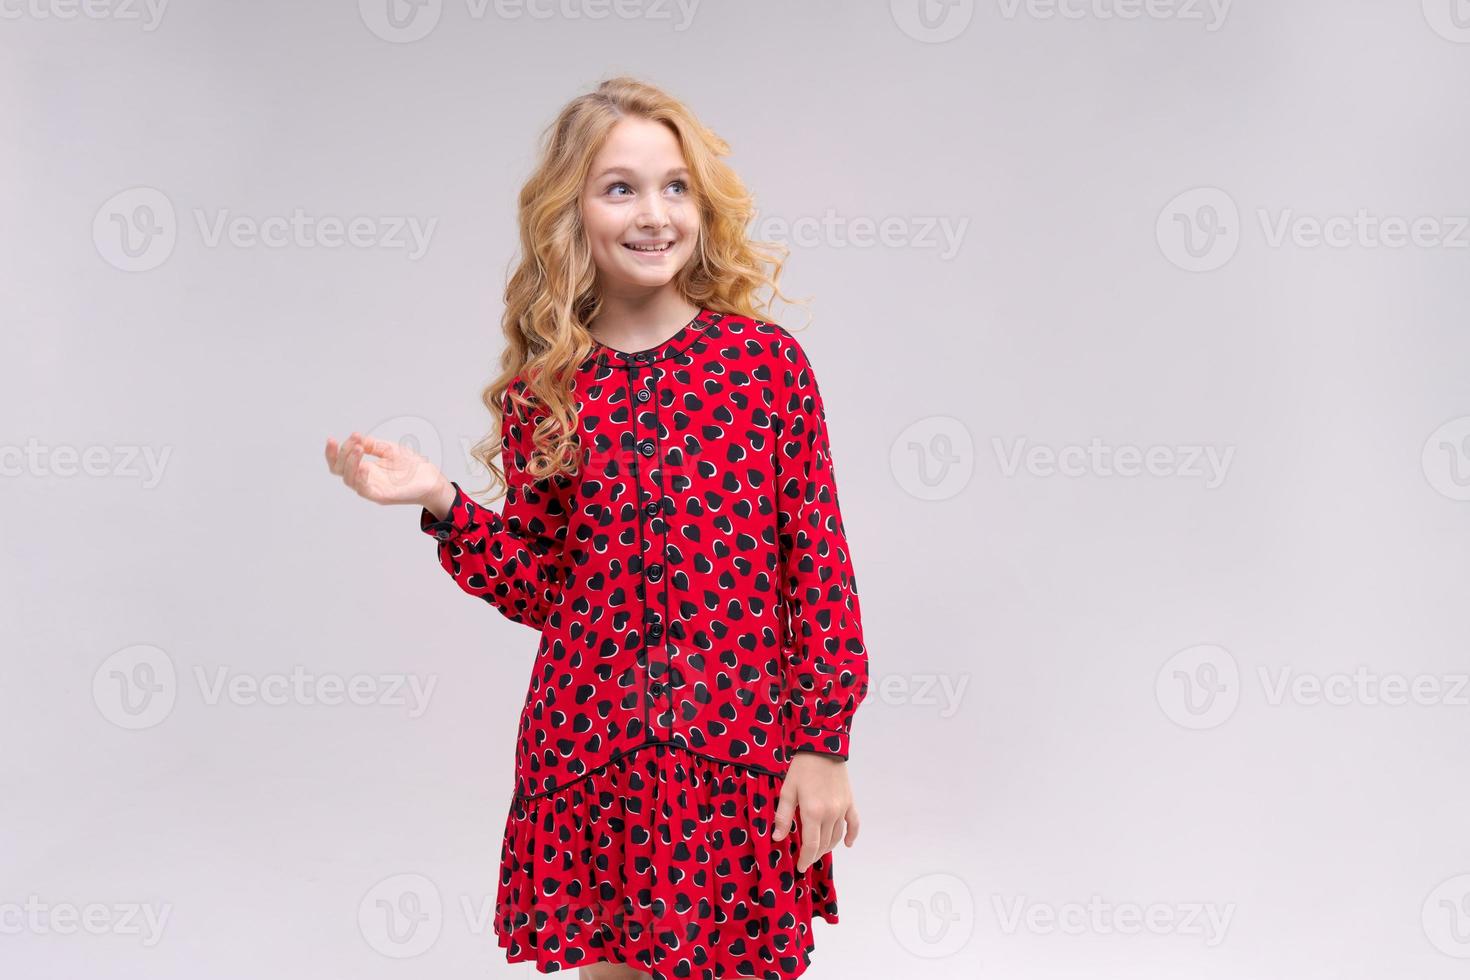 ein kleines mädchen in rotem kleid mit langen welligen haaren zeigt ihre anzeige auf einem isolierten foto